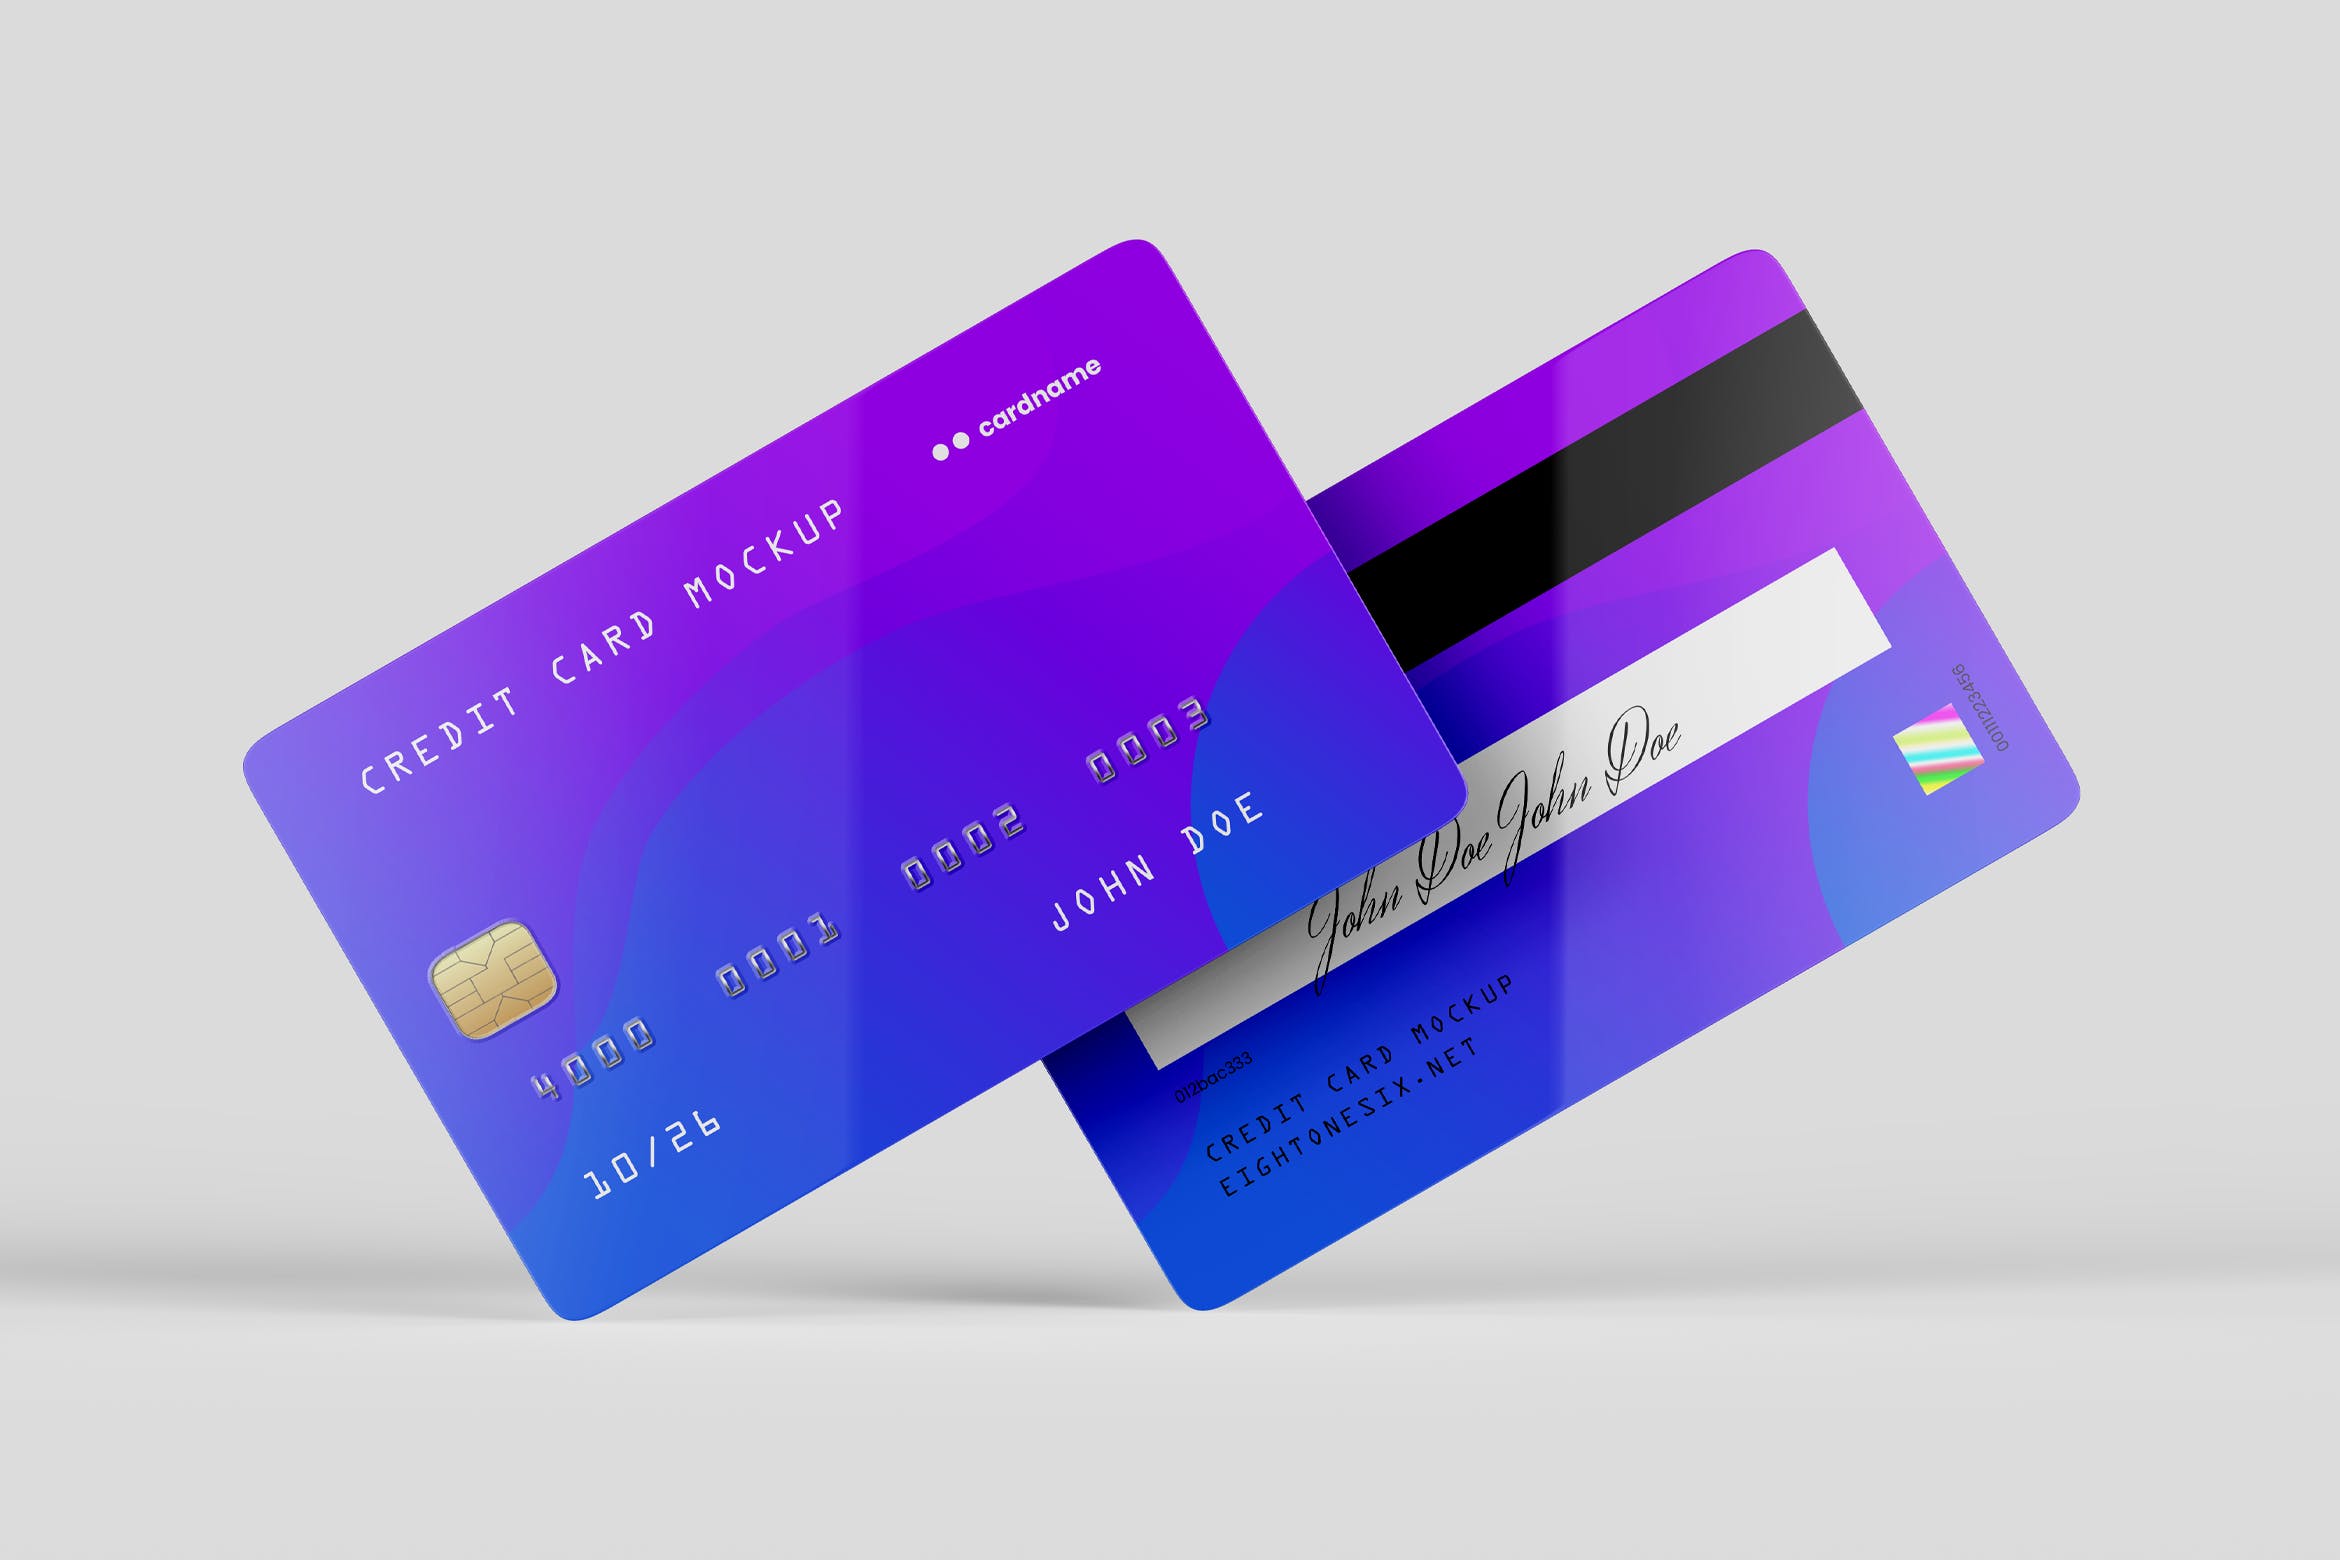 信用卡/银行卡/会员卡设计效果图样机第一素材精选模板 Credit Card Mock-Up Template插图